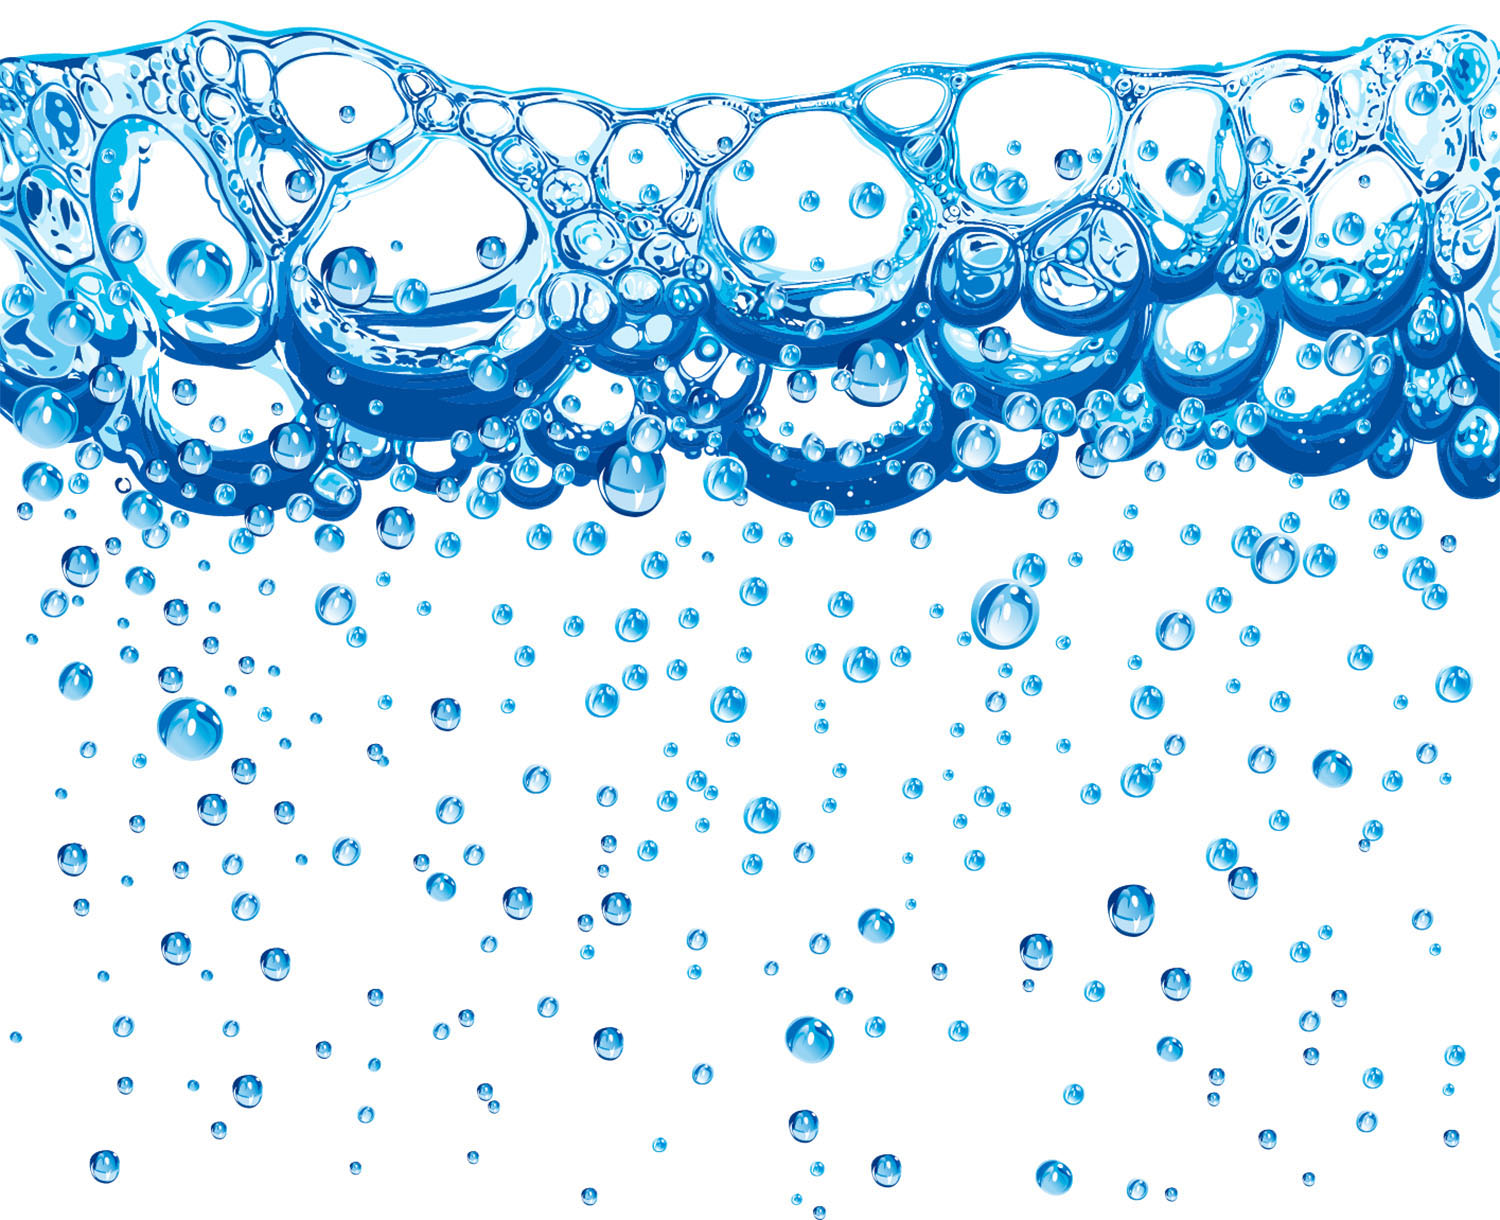 Burbujas iniciando un proceso de espumación en un medio tensoactivo